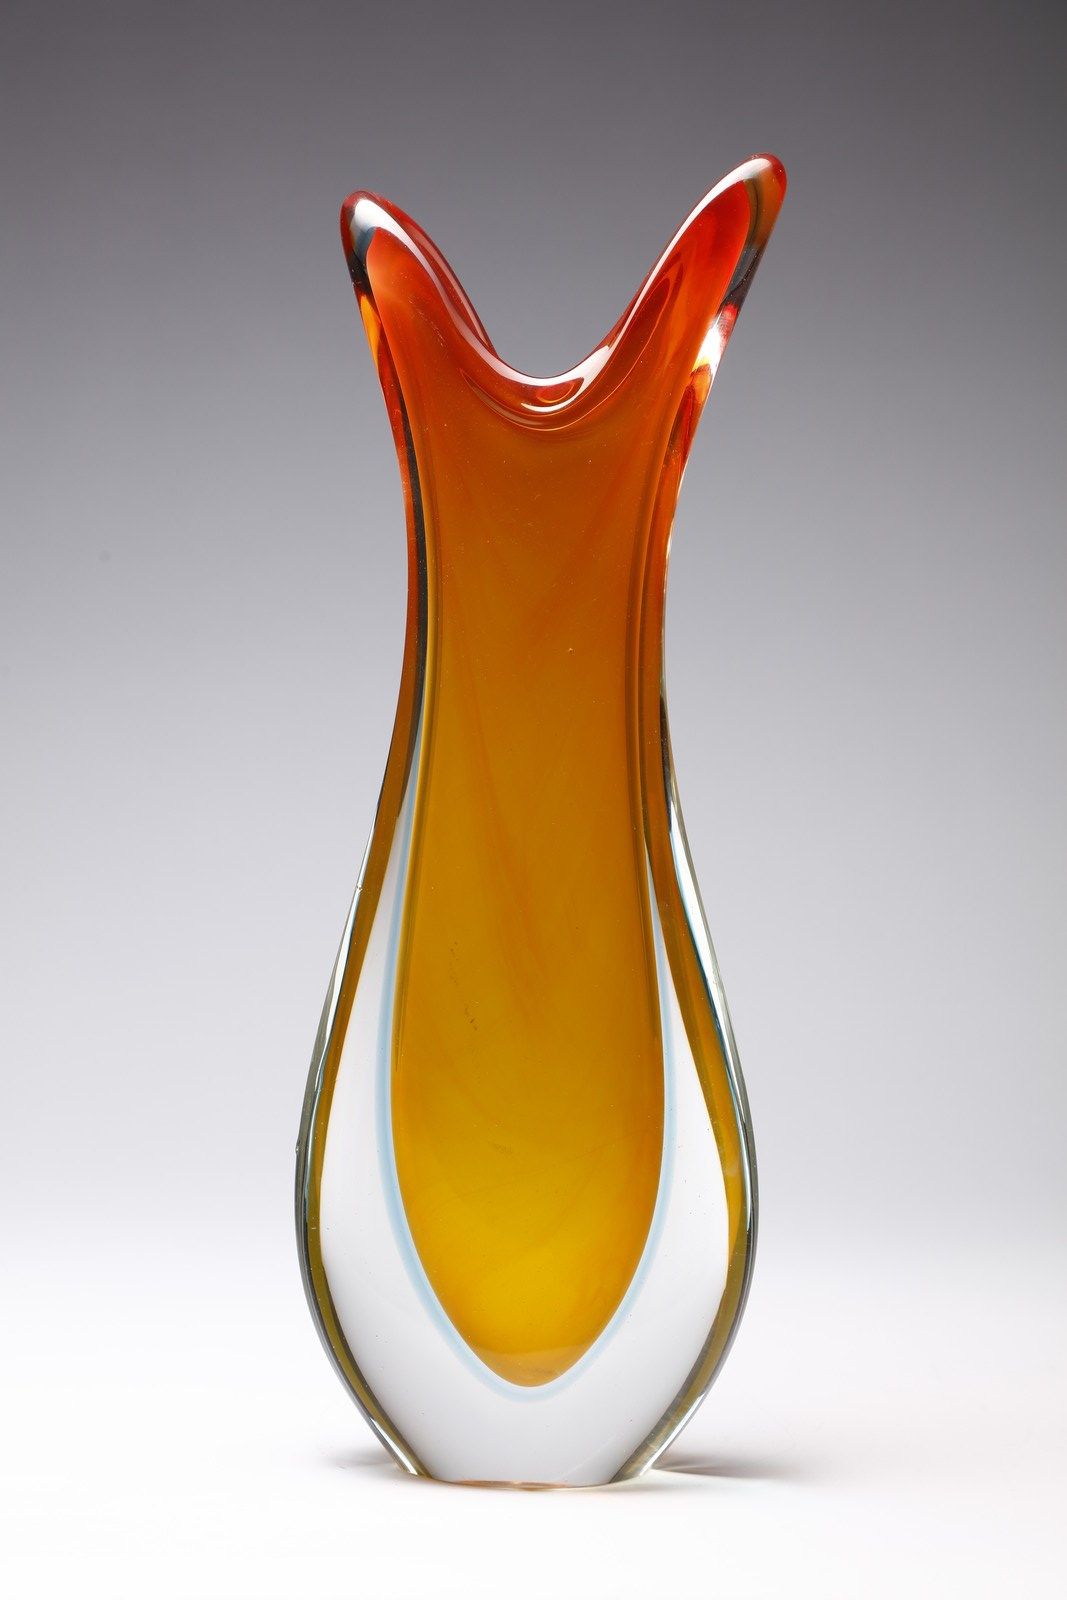 Manifattura Muranese Submerged glass vase in yellow, orange and blue . Murano gl&hellip;